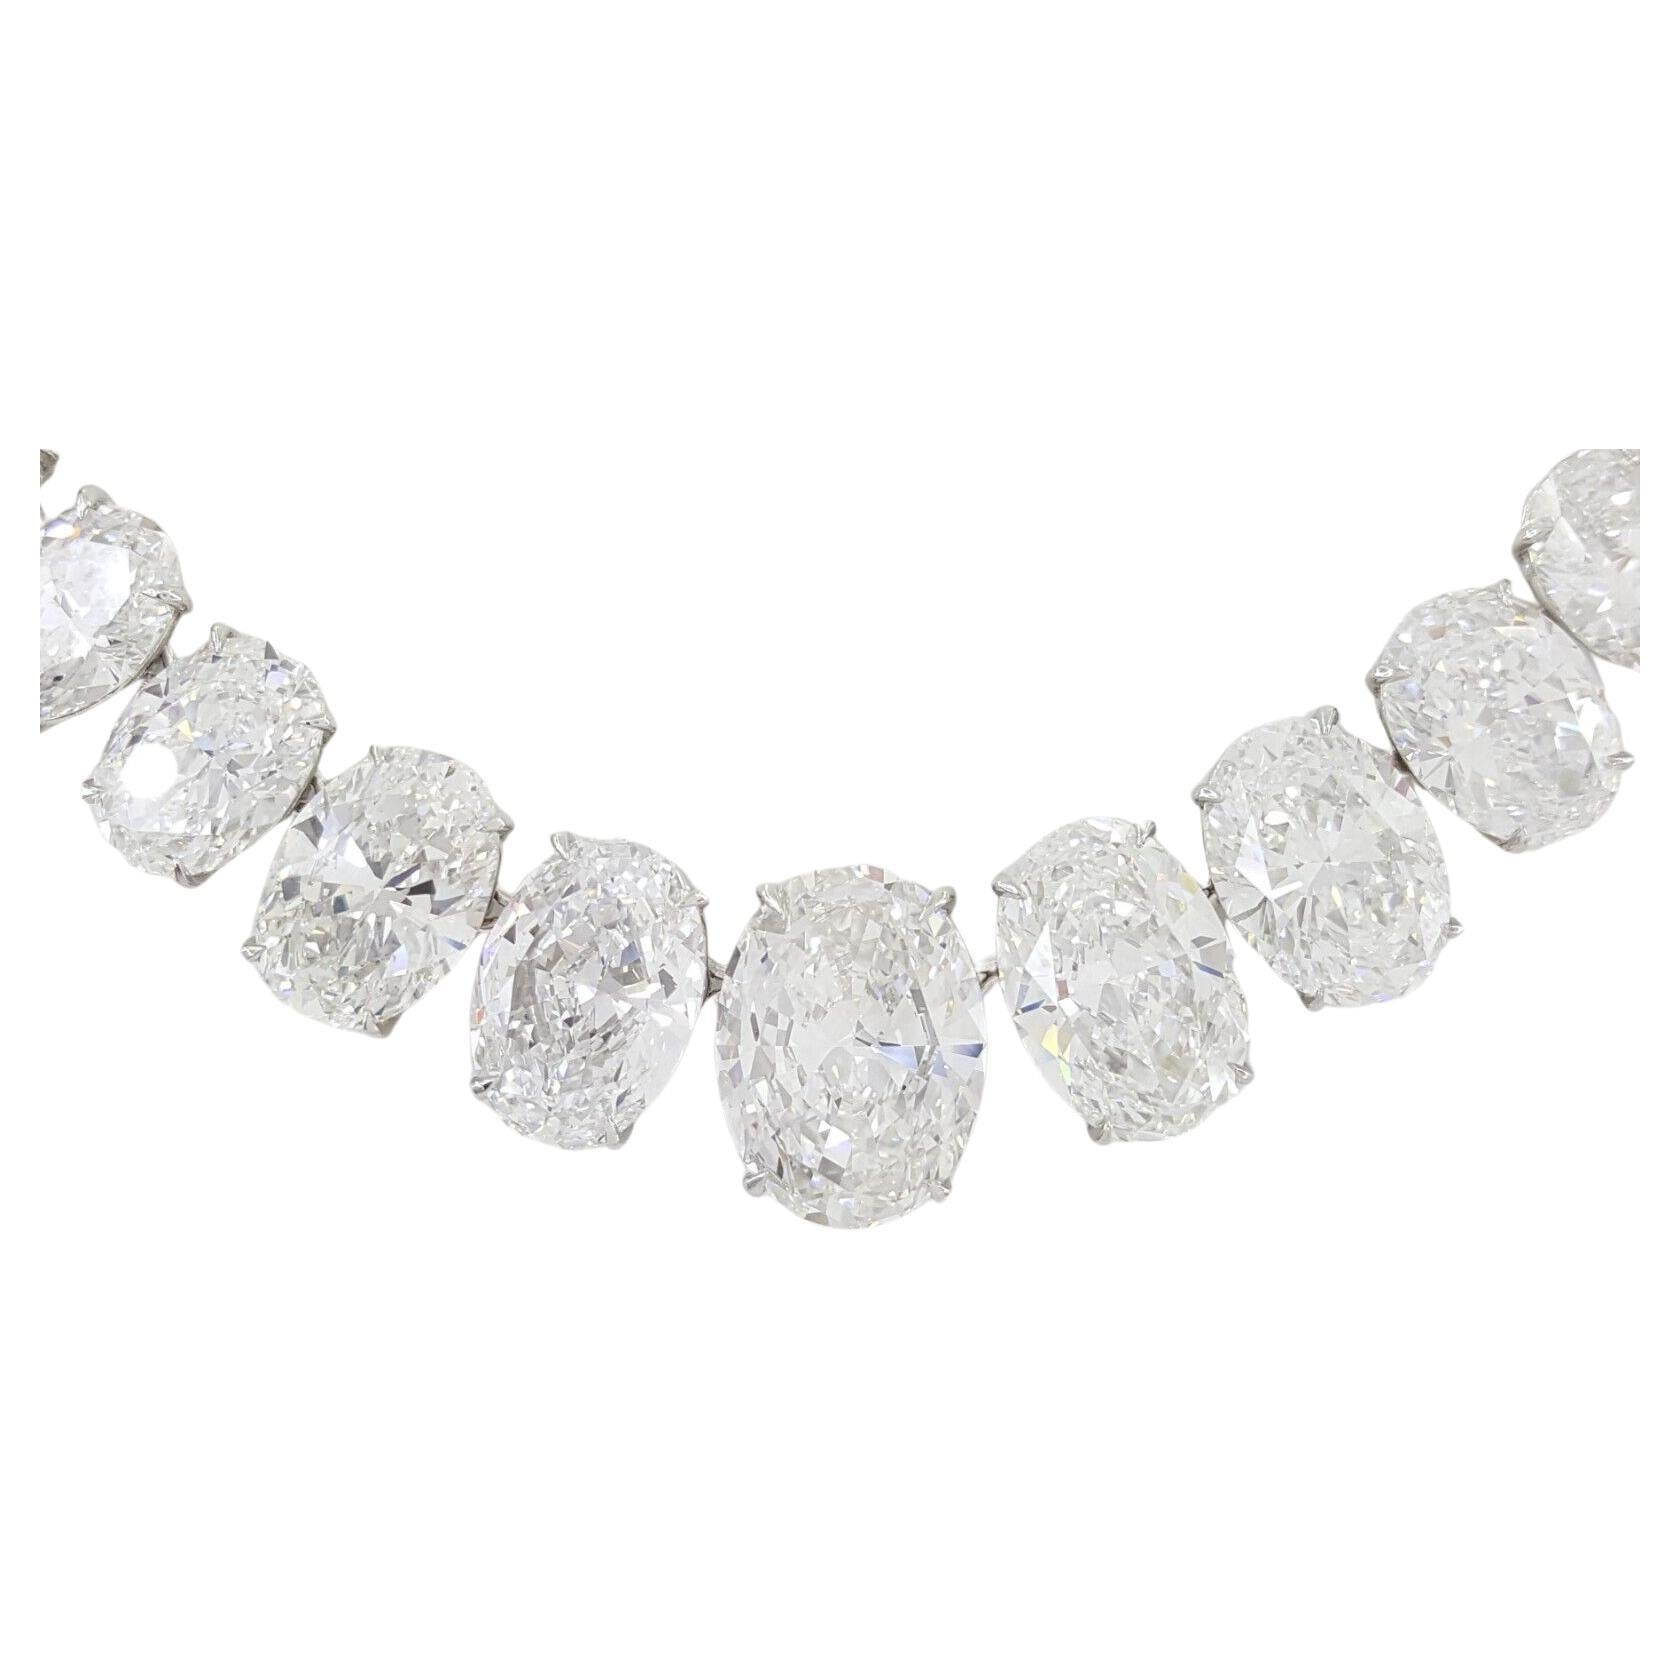 Certified 16.60 Carat Oval Cut Riviera Diamond Necklace For Sale